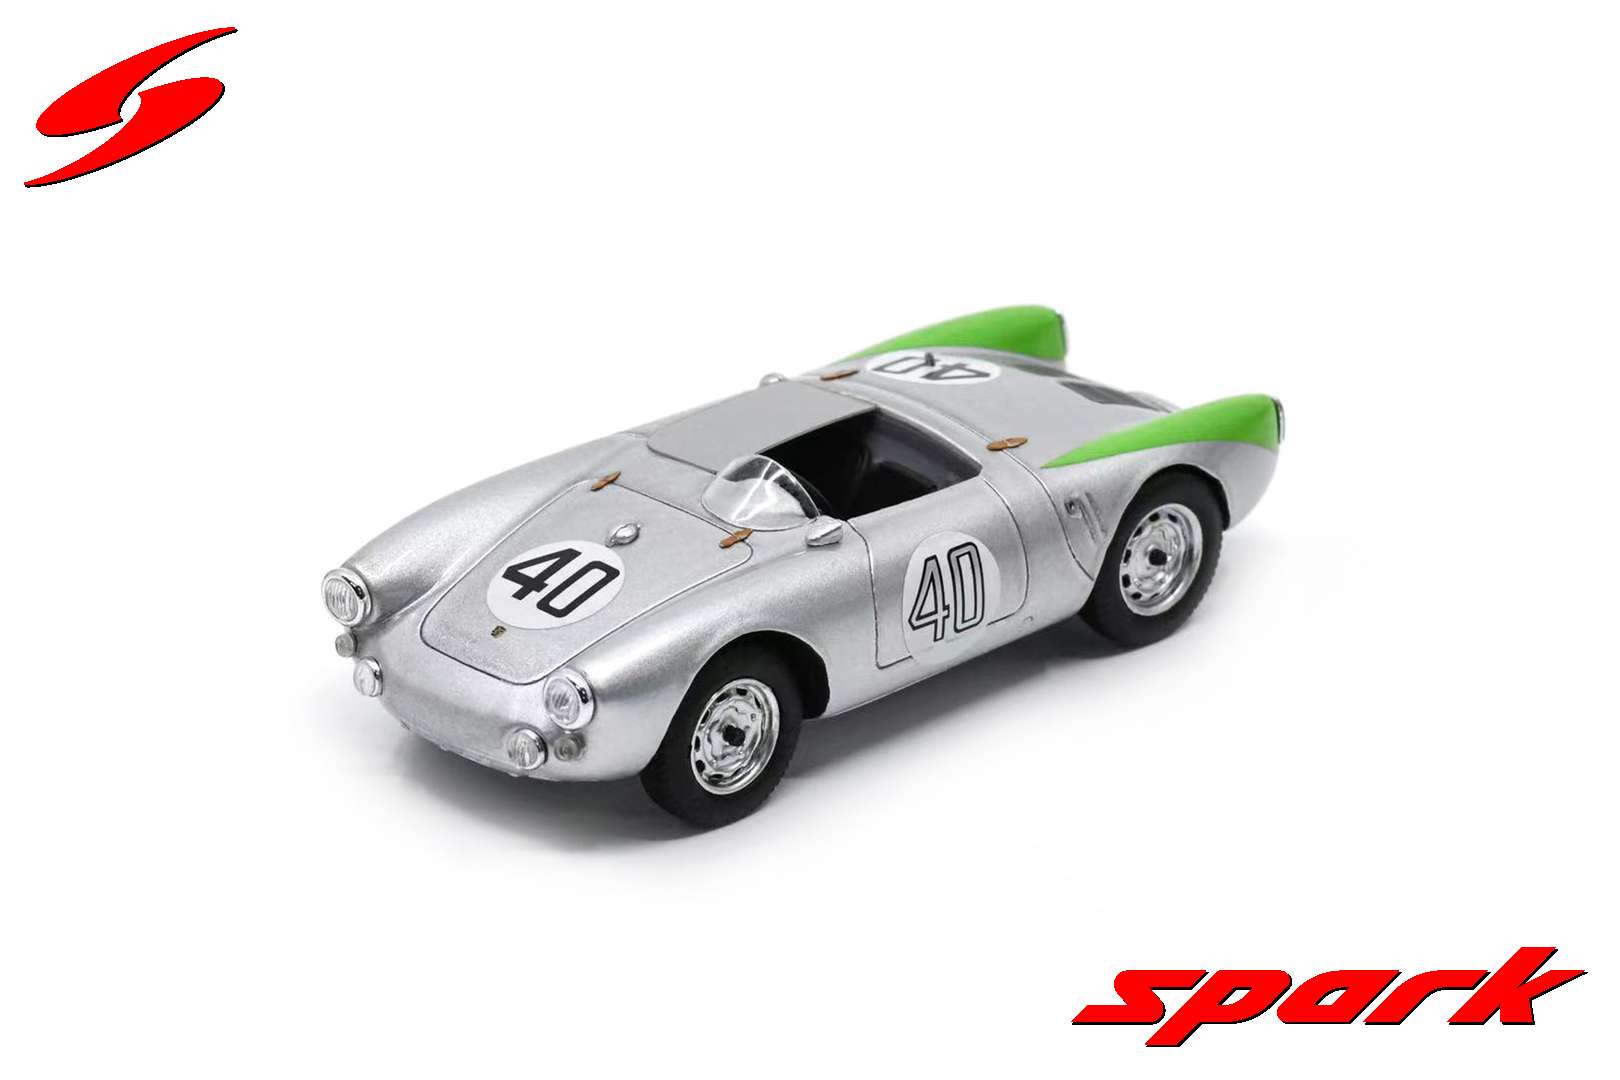 S9709 1/43 Porsche 550 No.40 24H Le Mans 1954 R. von Frankenberg - H. 'Helm' Glockler